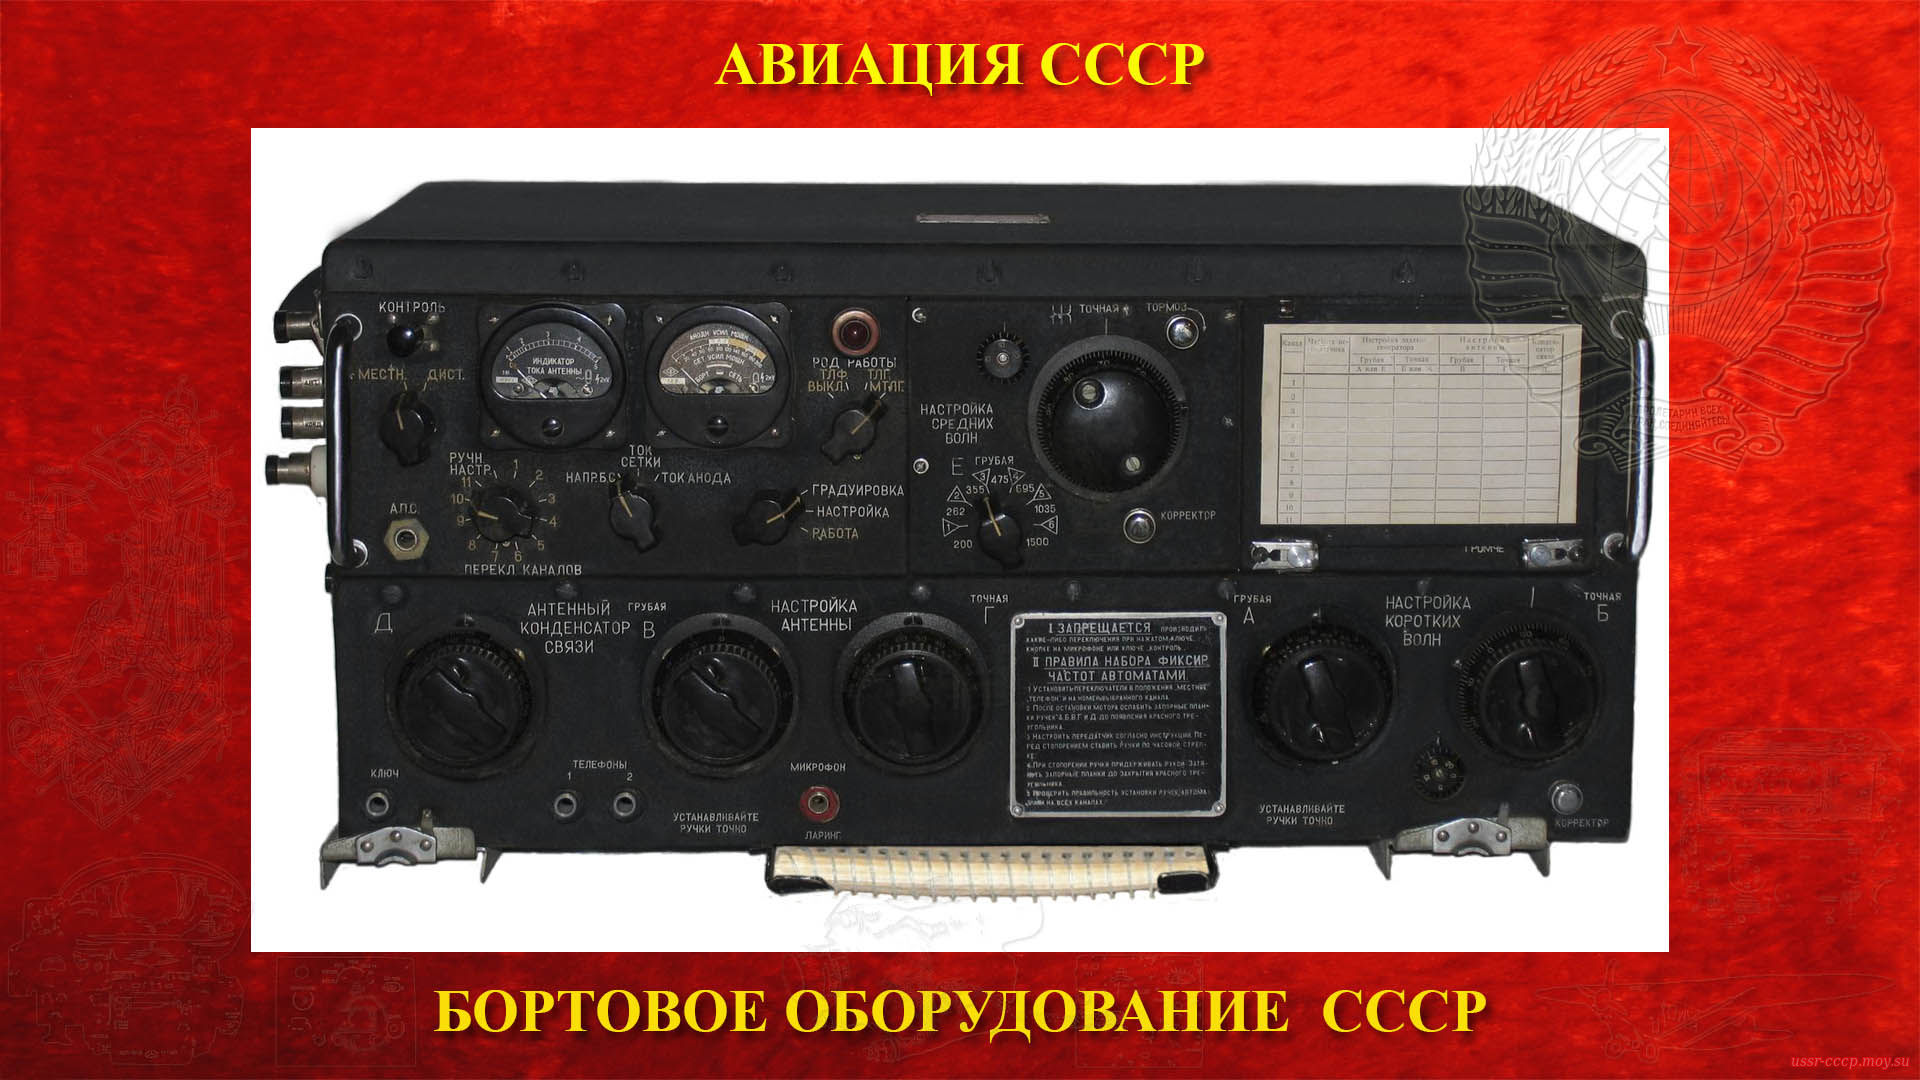 Р-807 (РСБ-70 — Беркут — Дунай) — Радиопередатчик СВ-КВ диапазонов (повествование)